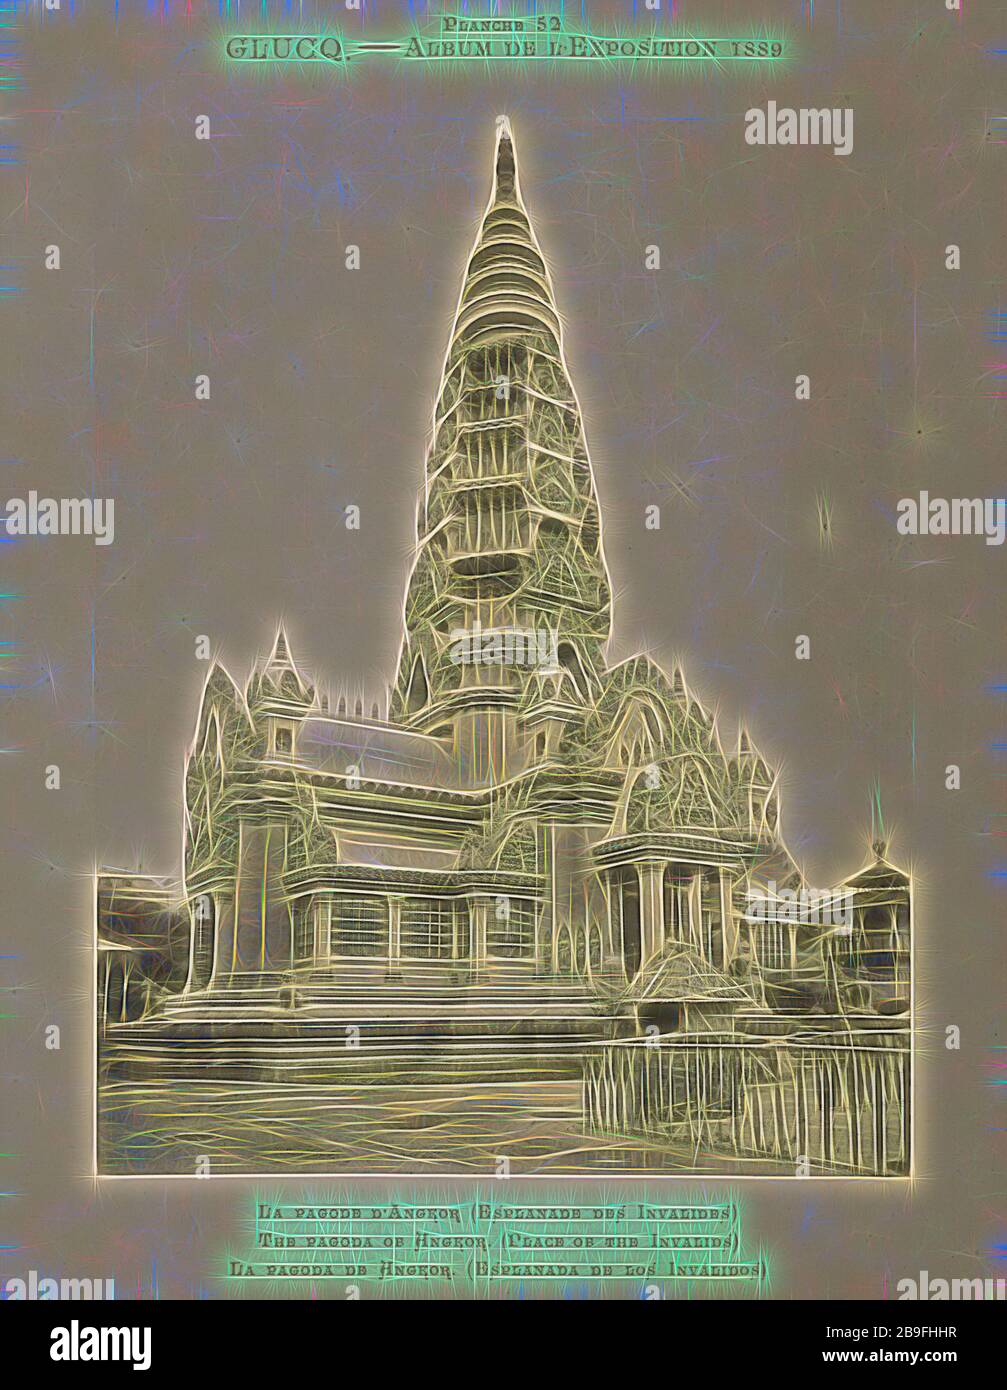 La pagode d'Angkor, l'album de l'exposition de 1889, Glückq, 1889, réinventée par Gibon, design d'un brillant chaleureux et gai de luminosité et de rayons de lumière radiance. L'art classique réinventé avec une touche moderne. La photographie inspirée du futurisme, qui embrasse l'énergie dynamique de la technologie moderne, du mouvement, de la vitesse et révolutionne la culture. Banque D'Images